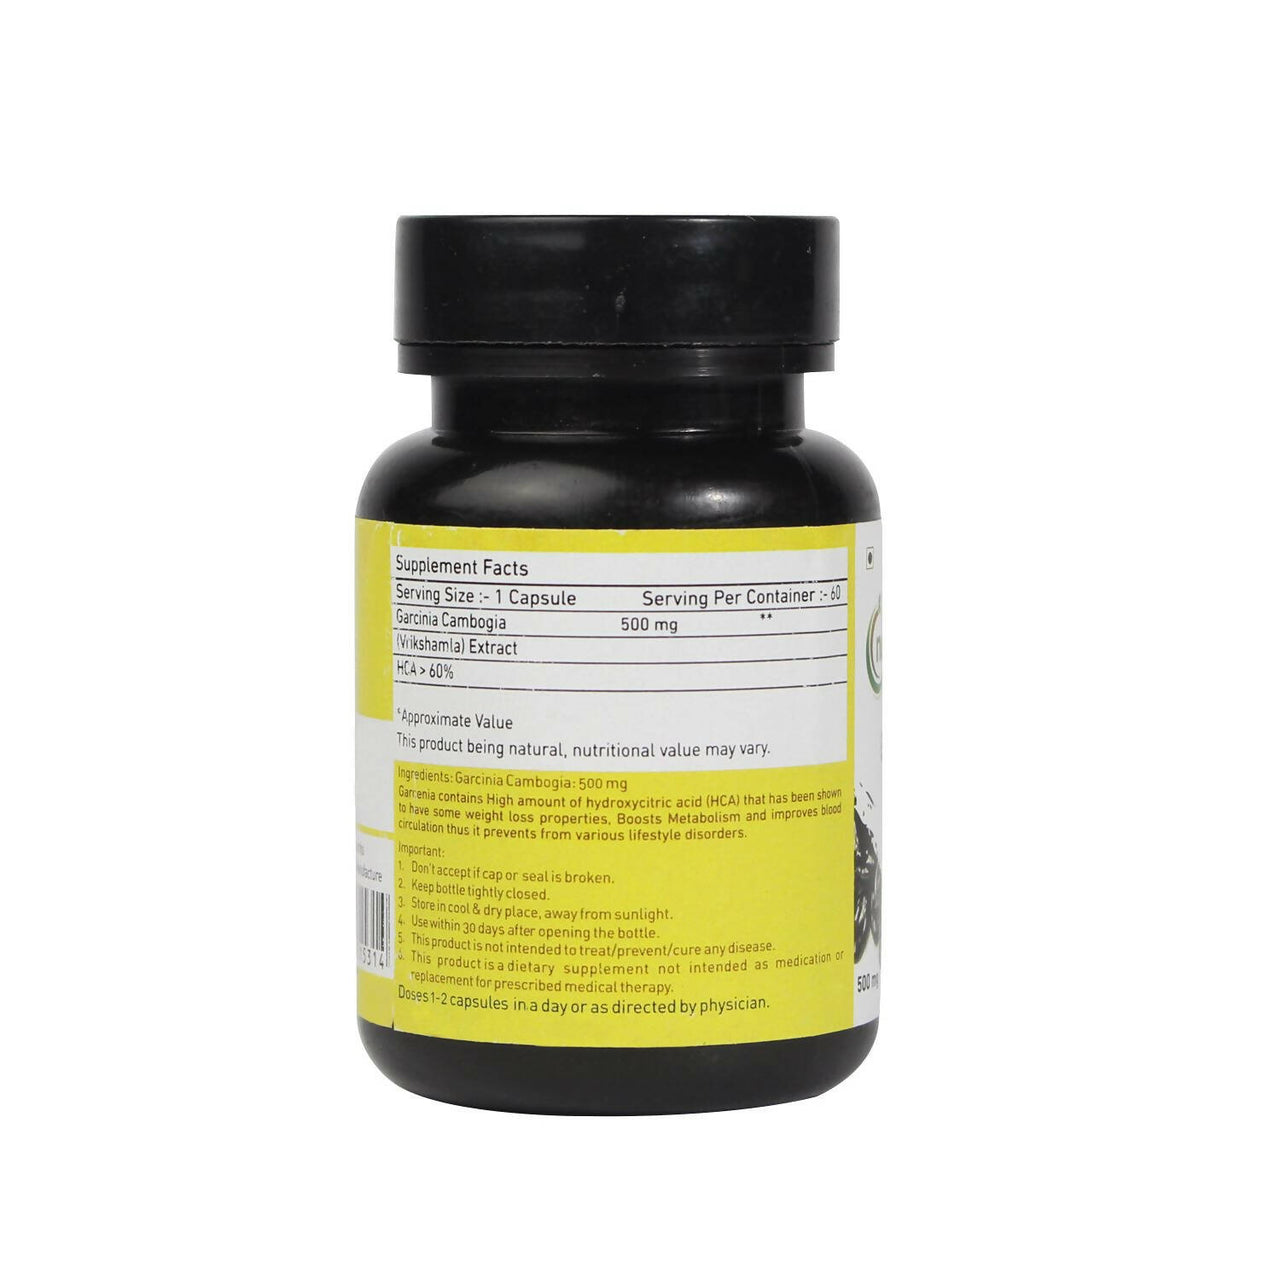 Nutriorg Garcinia Seed Oil Gel Capsules - Distacart